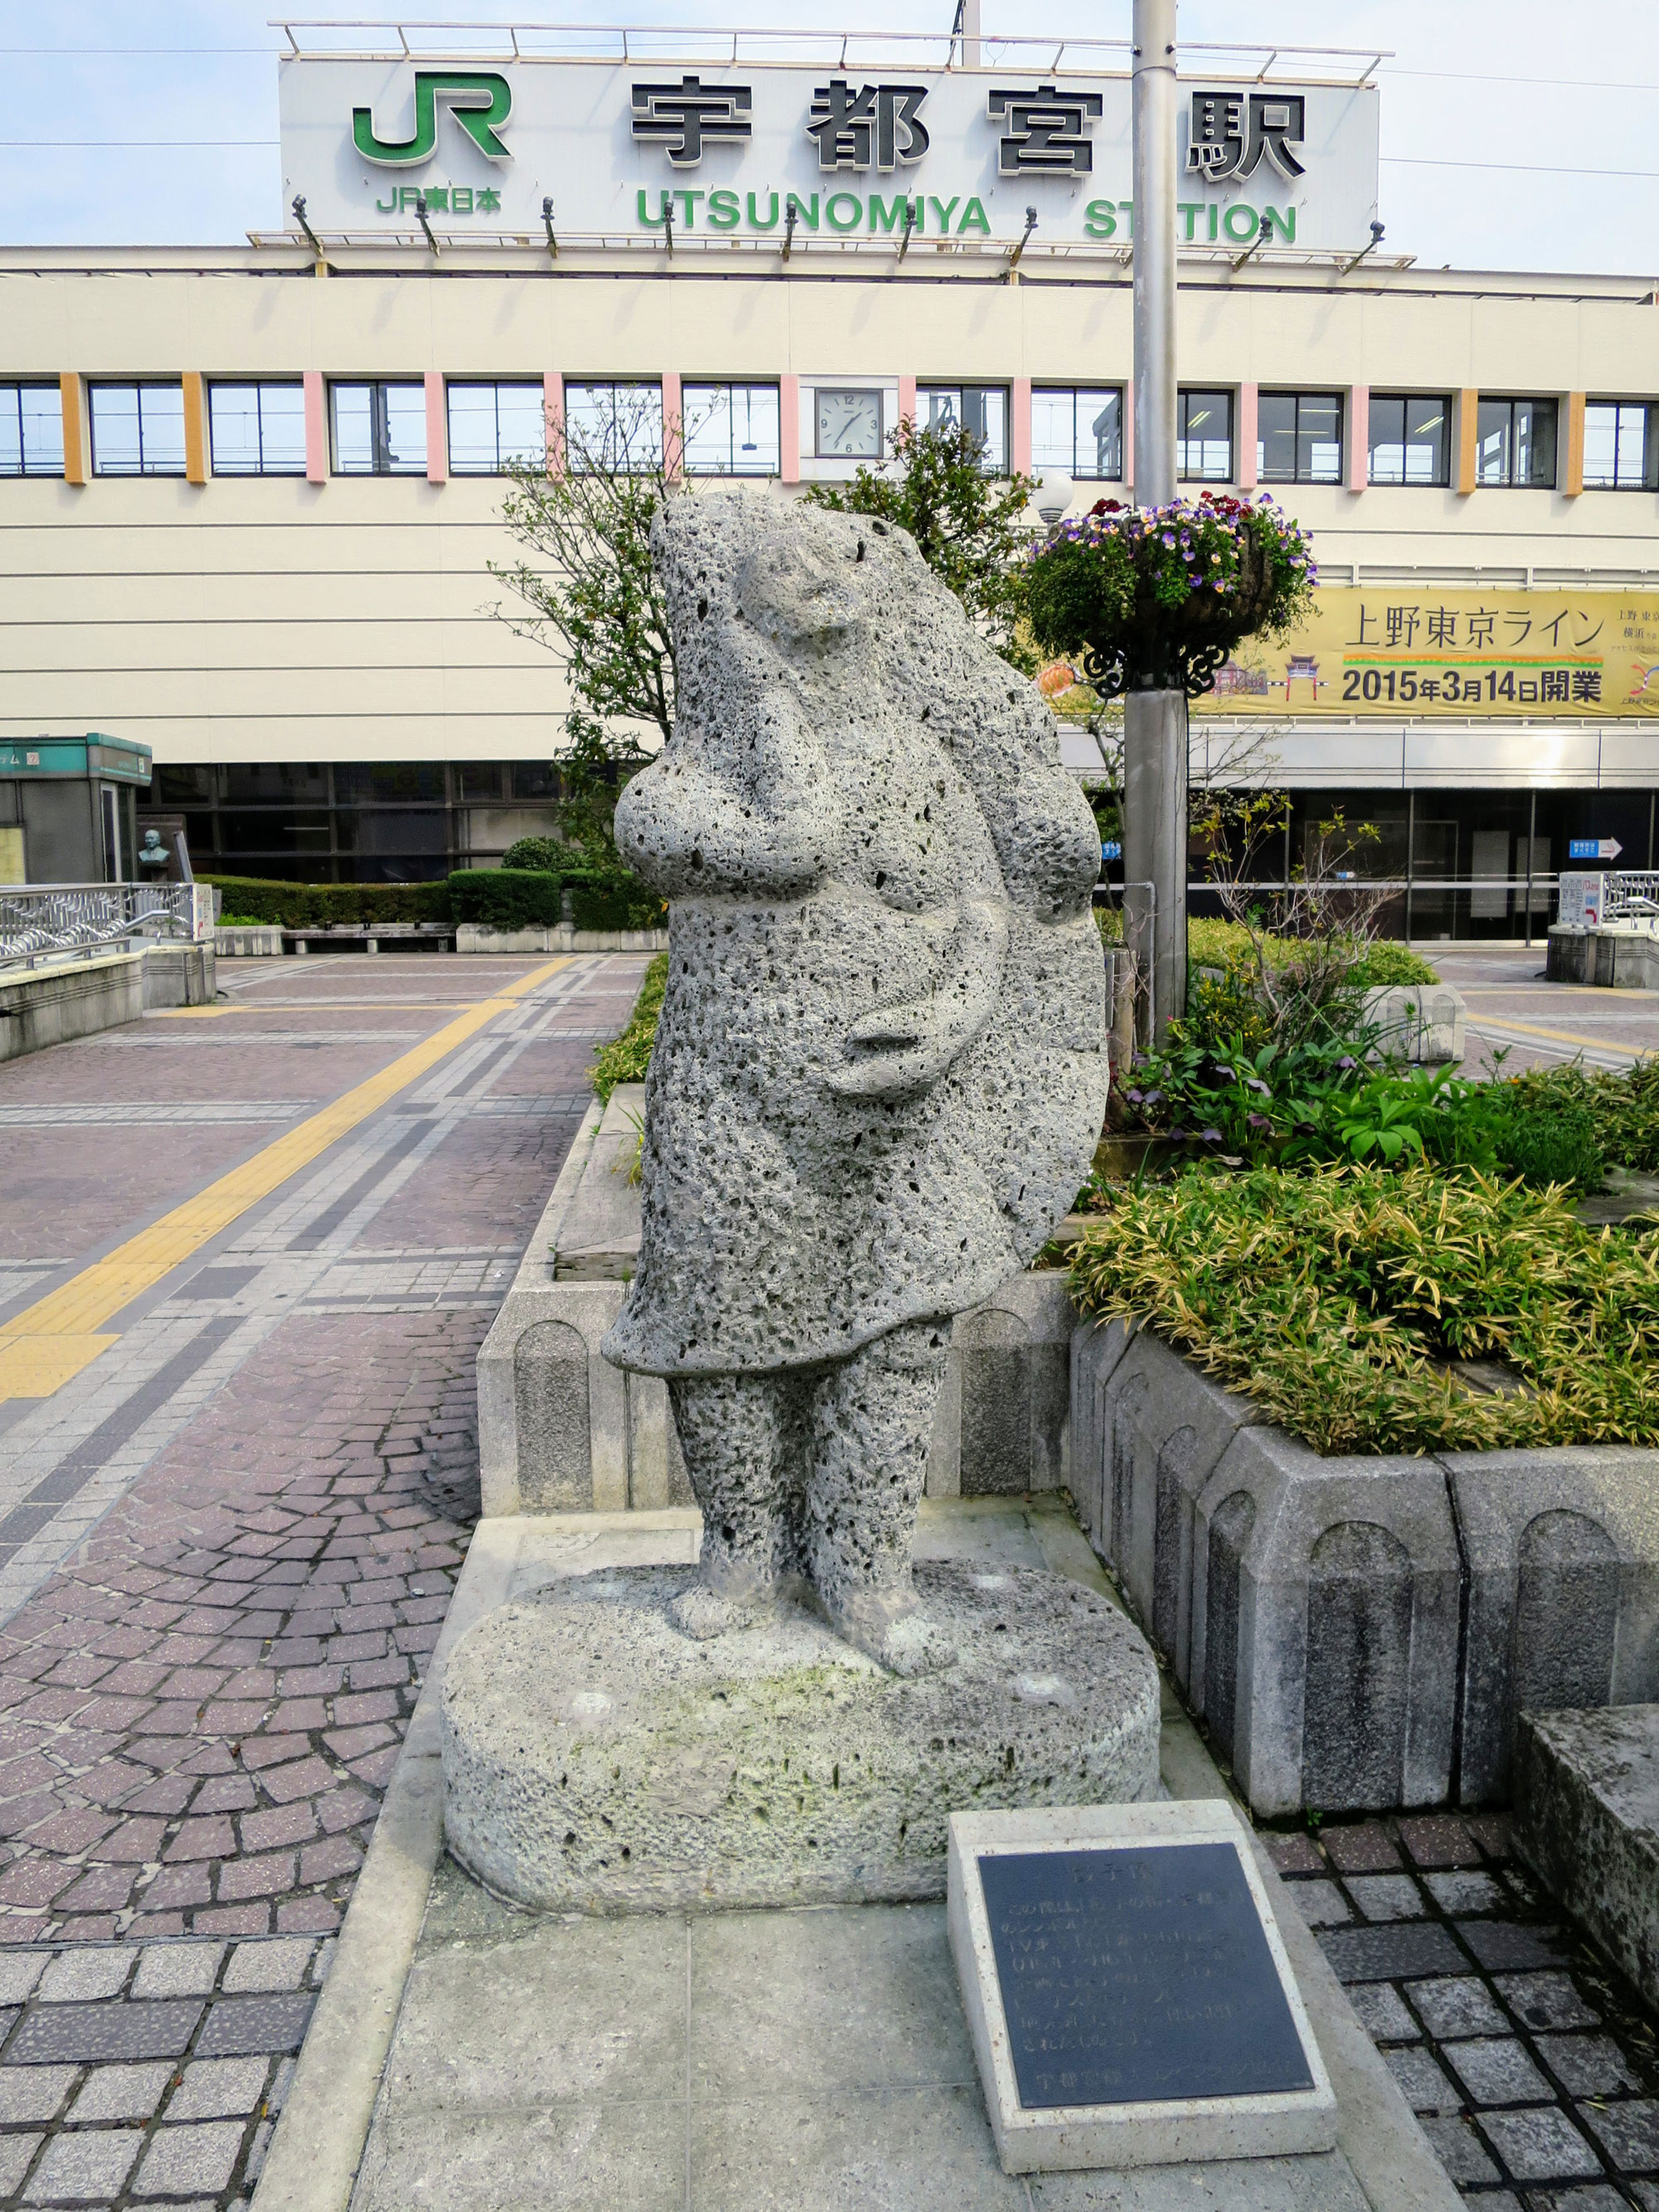 Die Gyoza-Statue vor dem Bahnhof Utsunomiya.